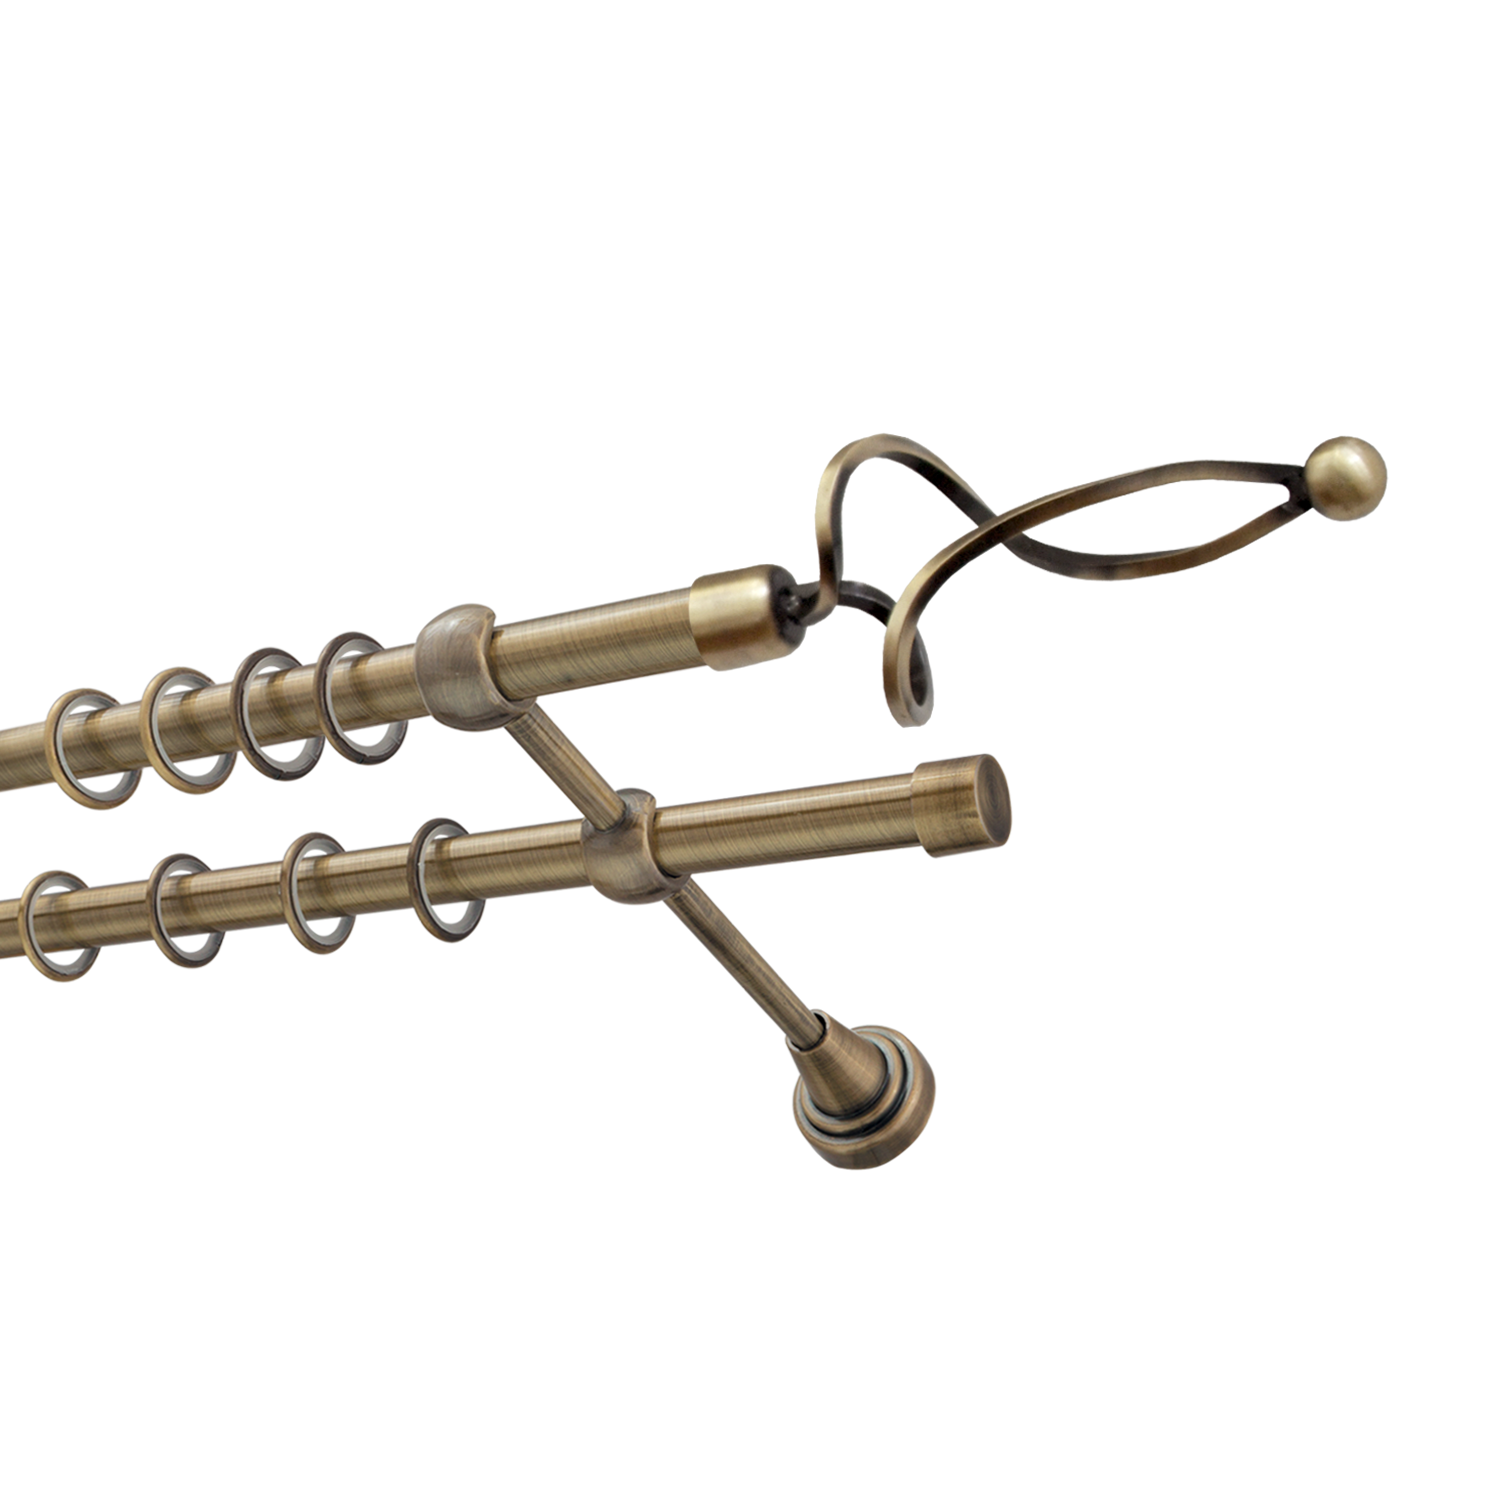 Металлический карниз для штор Жемчужина, двухрядный 16/16 мм, бронза, гладкая штанга, длина 180 см - фото Wikidecor.ru